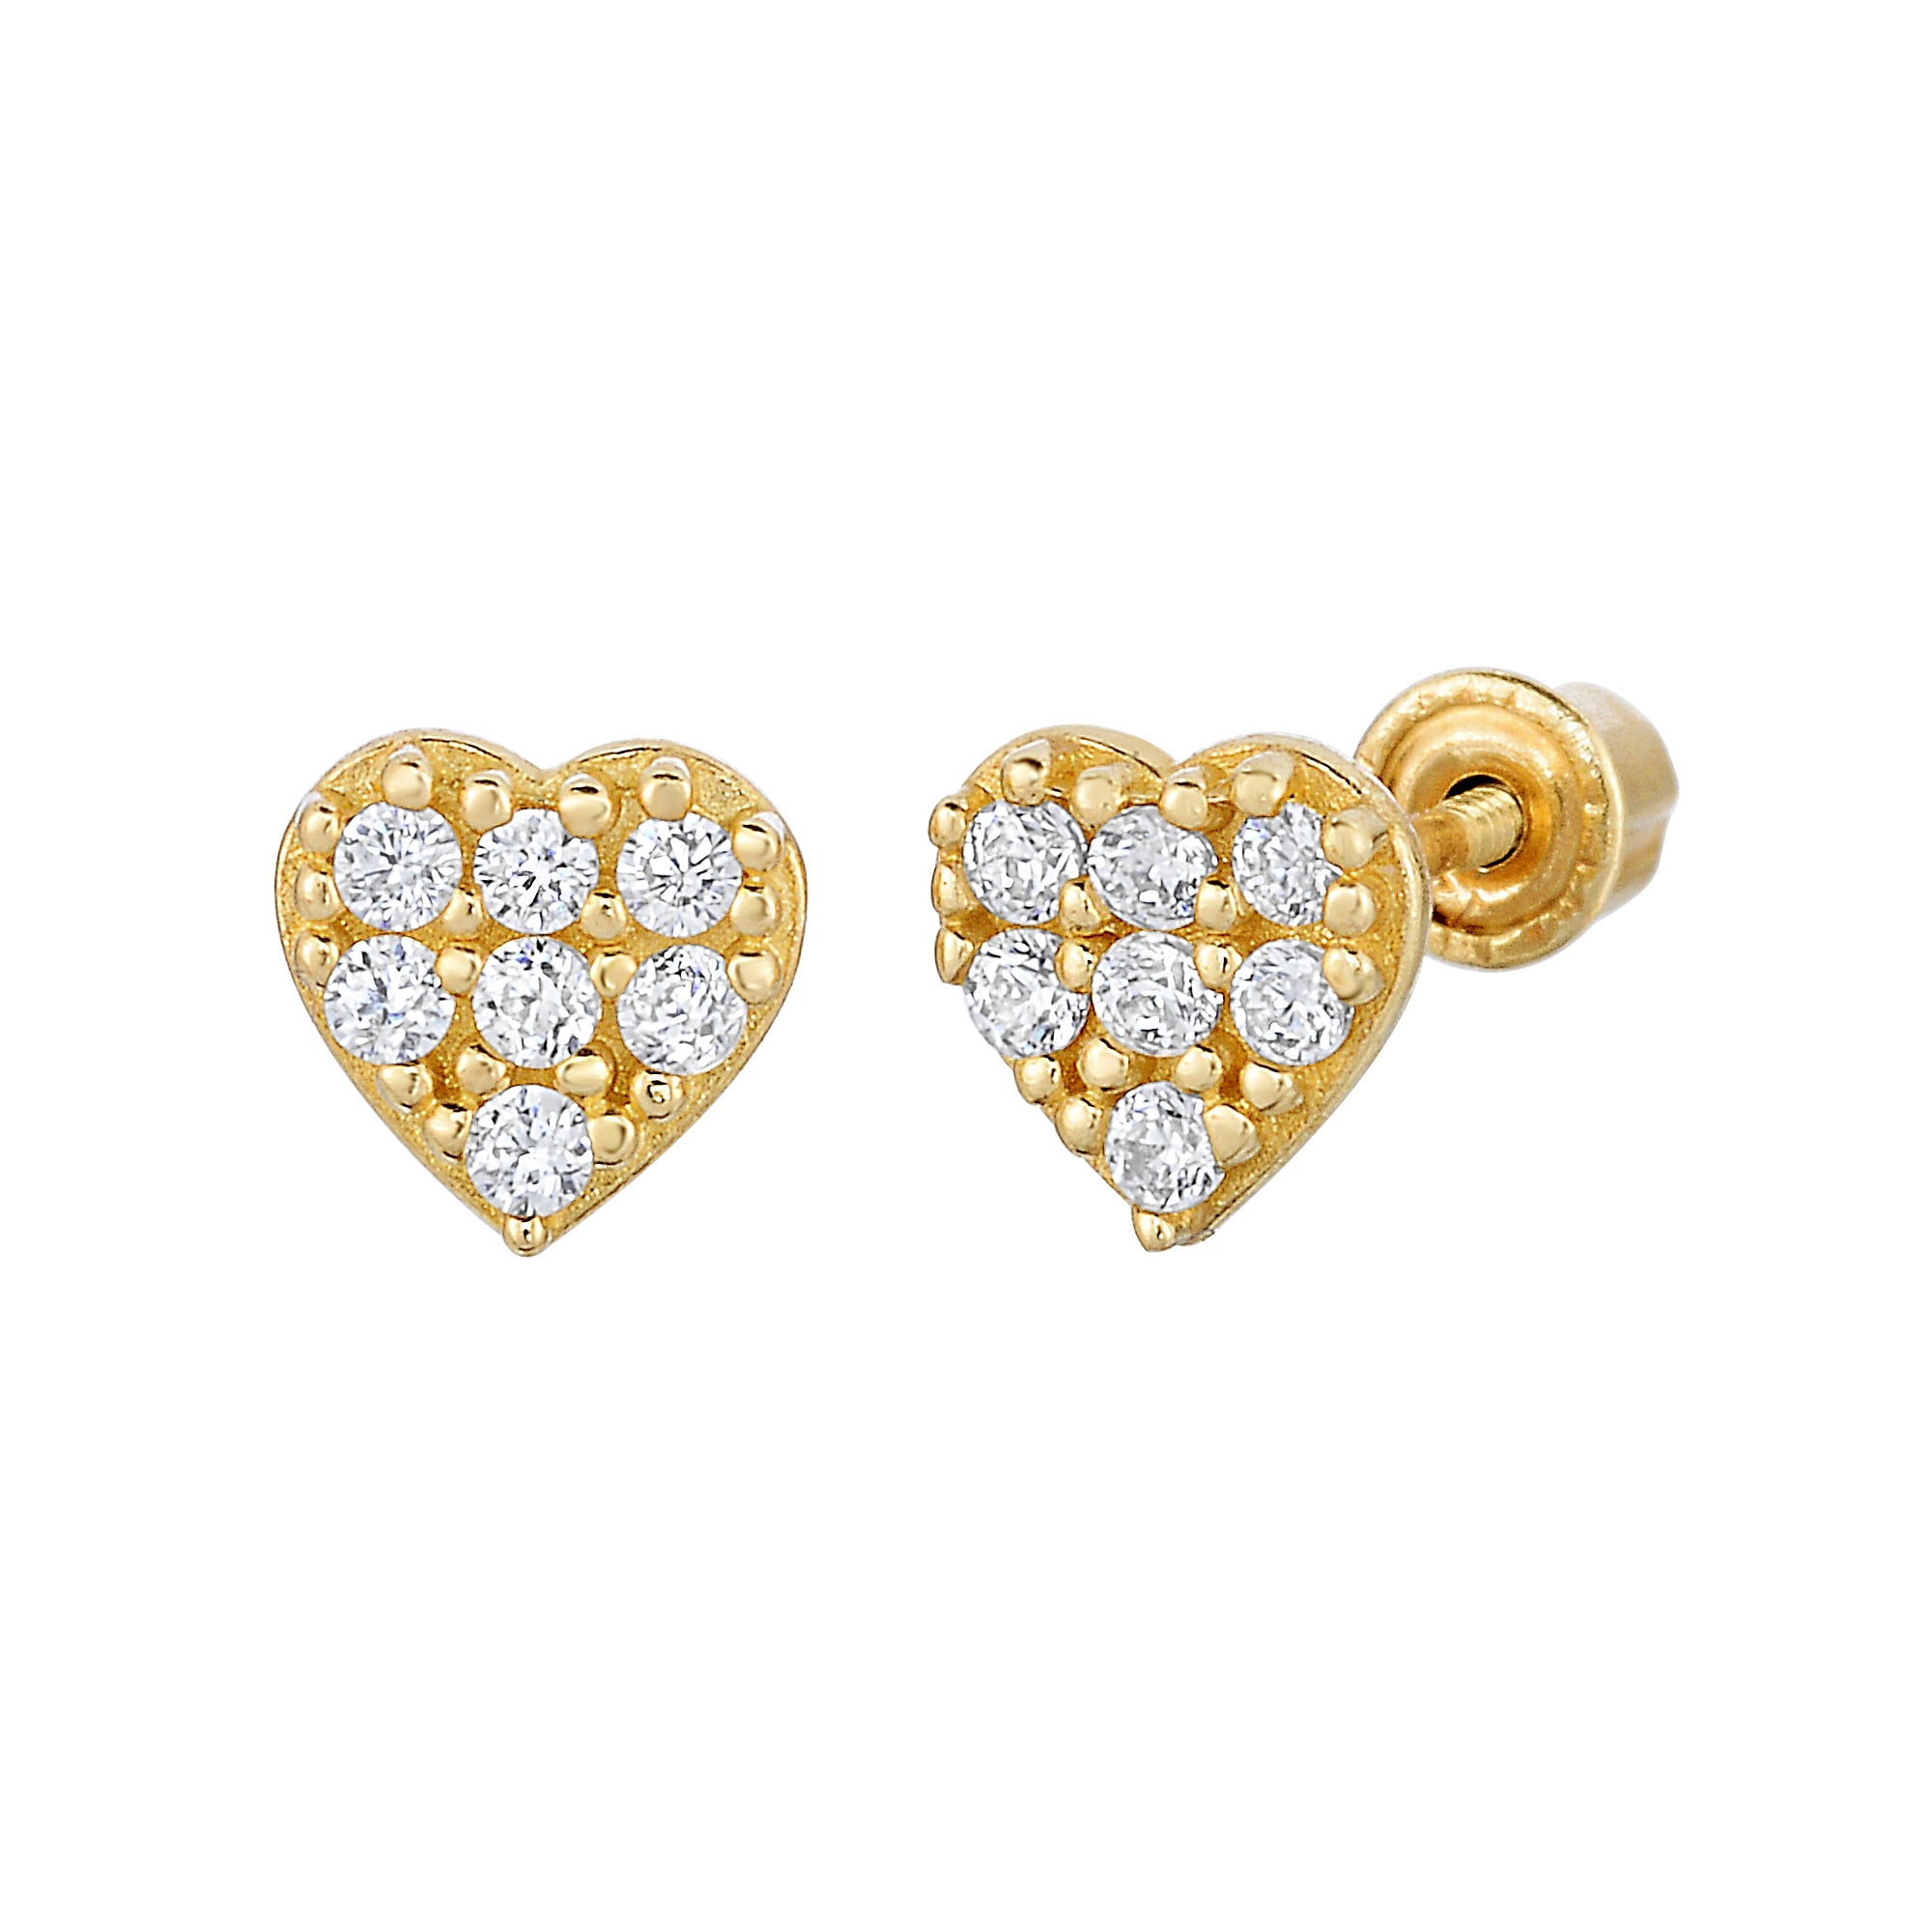 14k Gold Heart Shaped Stud Earrings